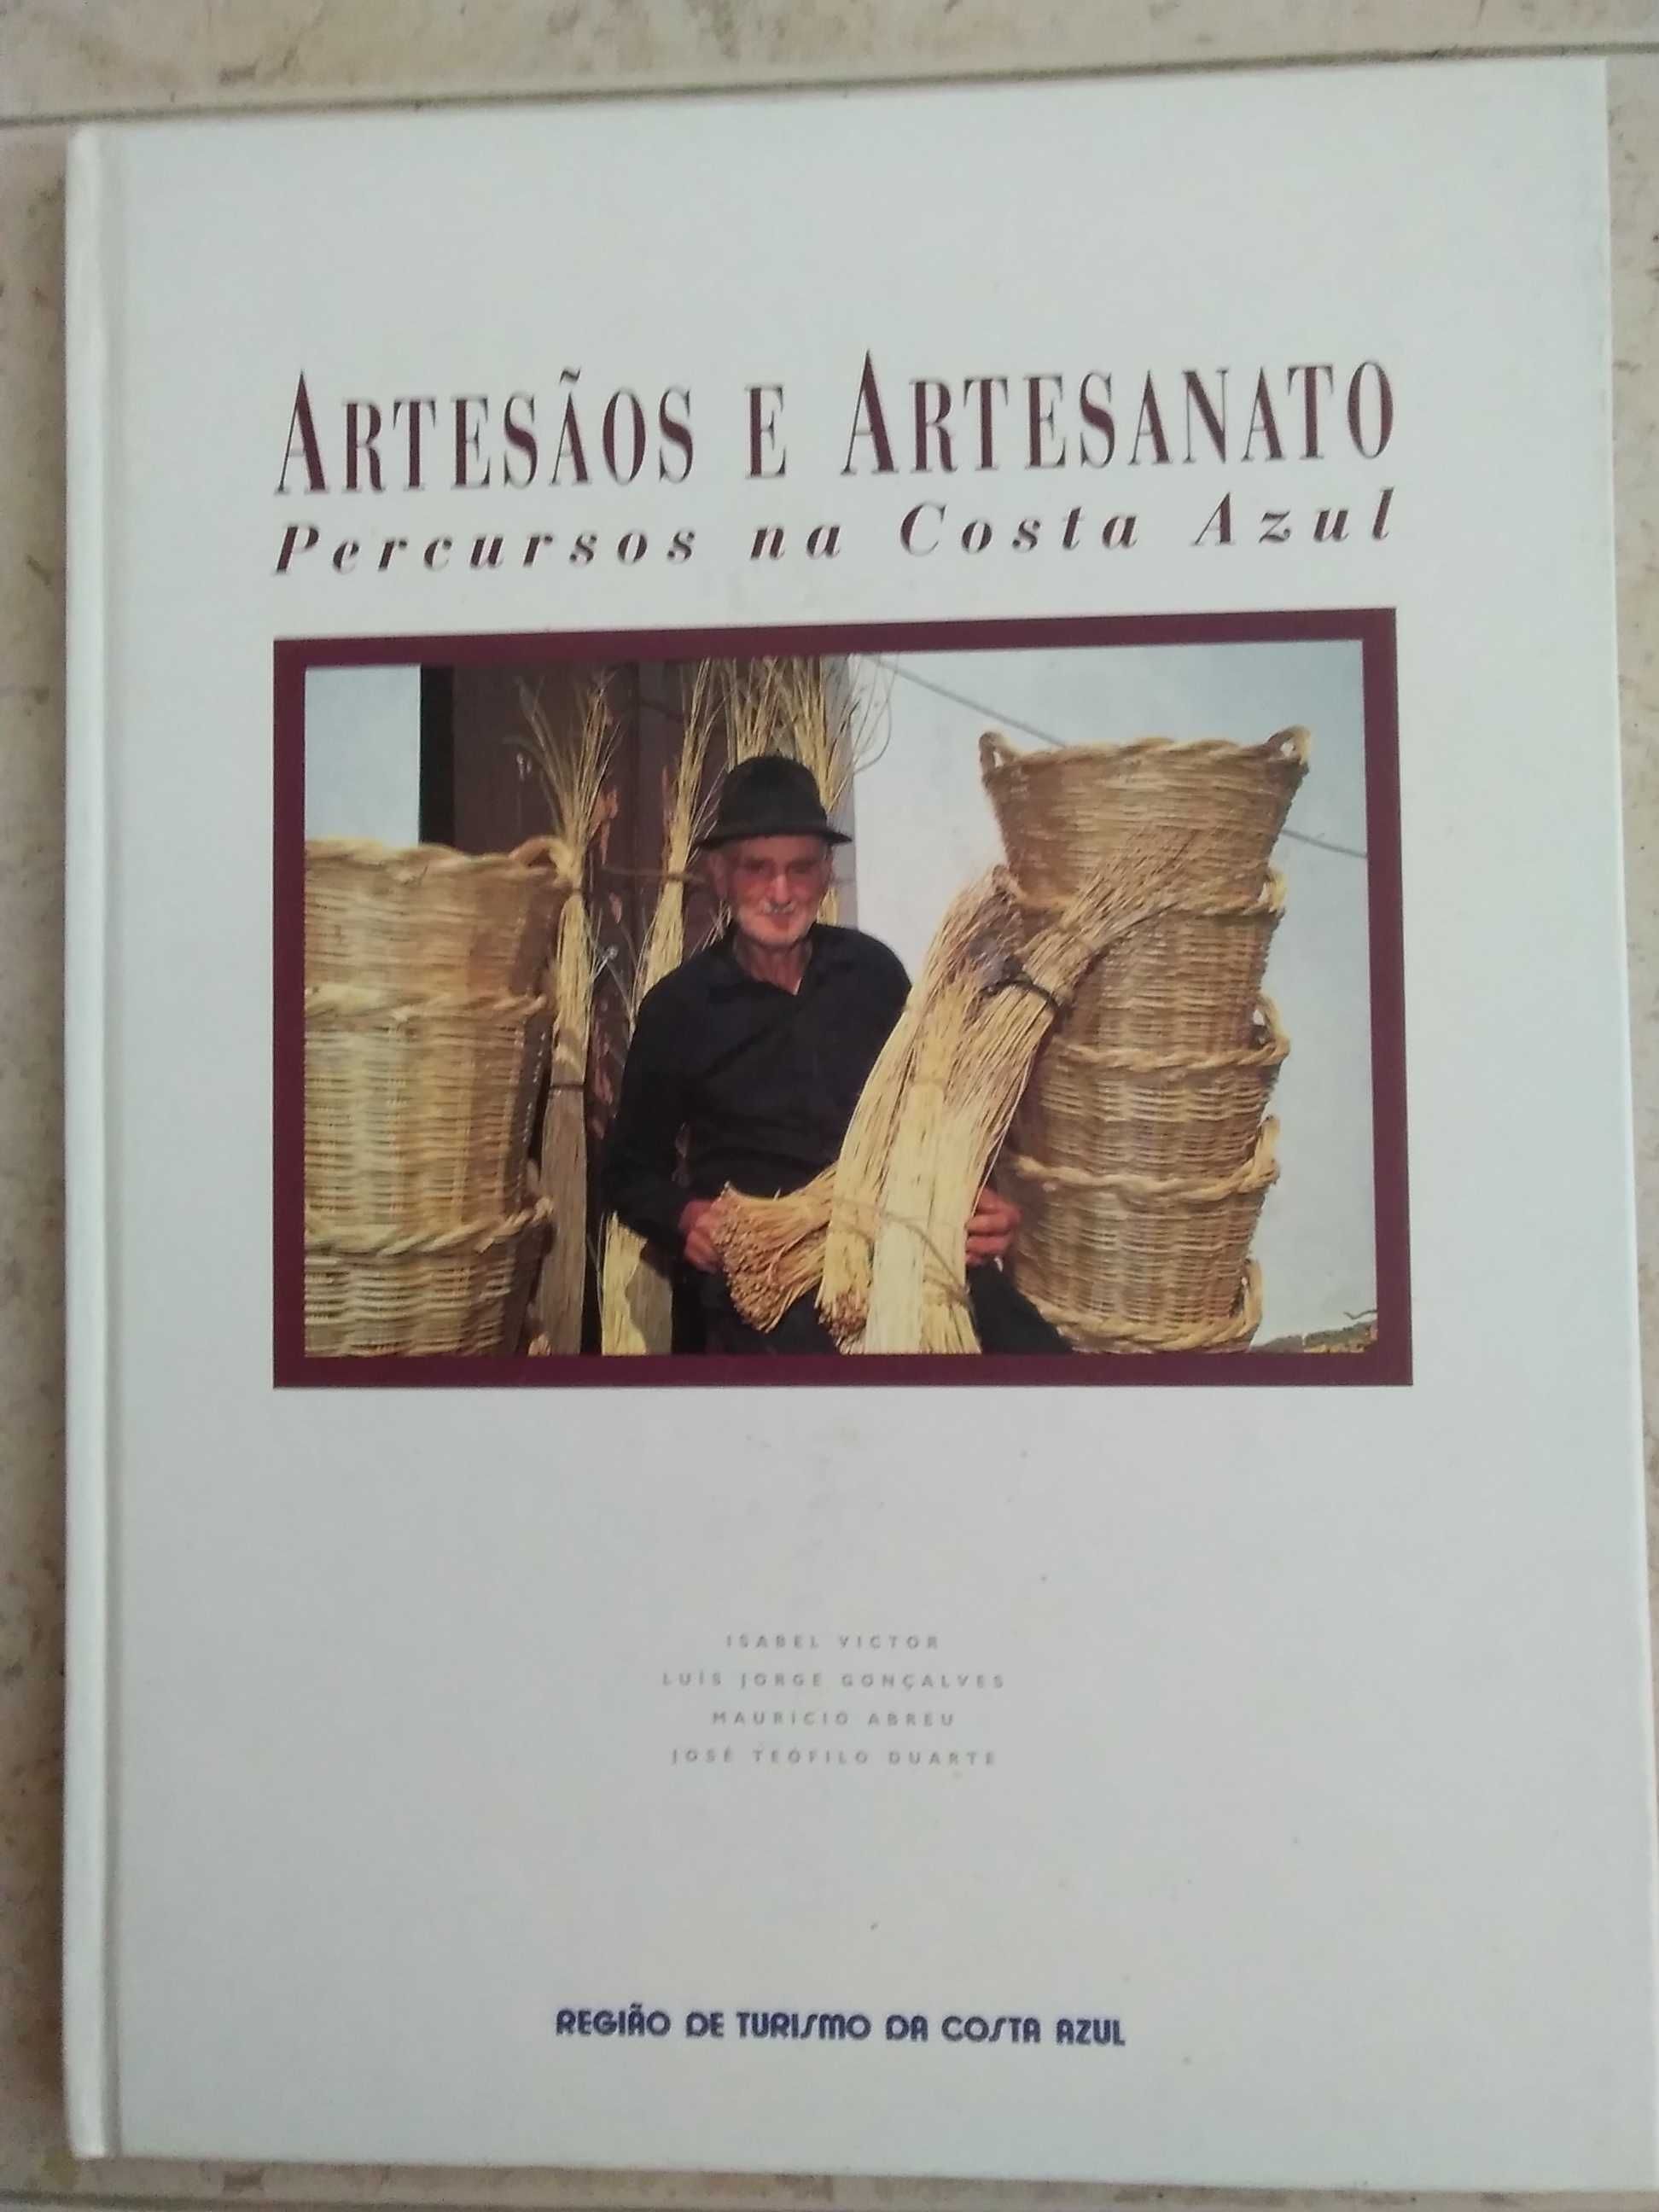 Artesãos e Artesanato - Percursos na Costa Azul.